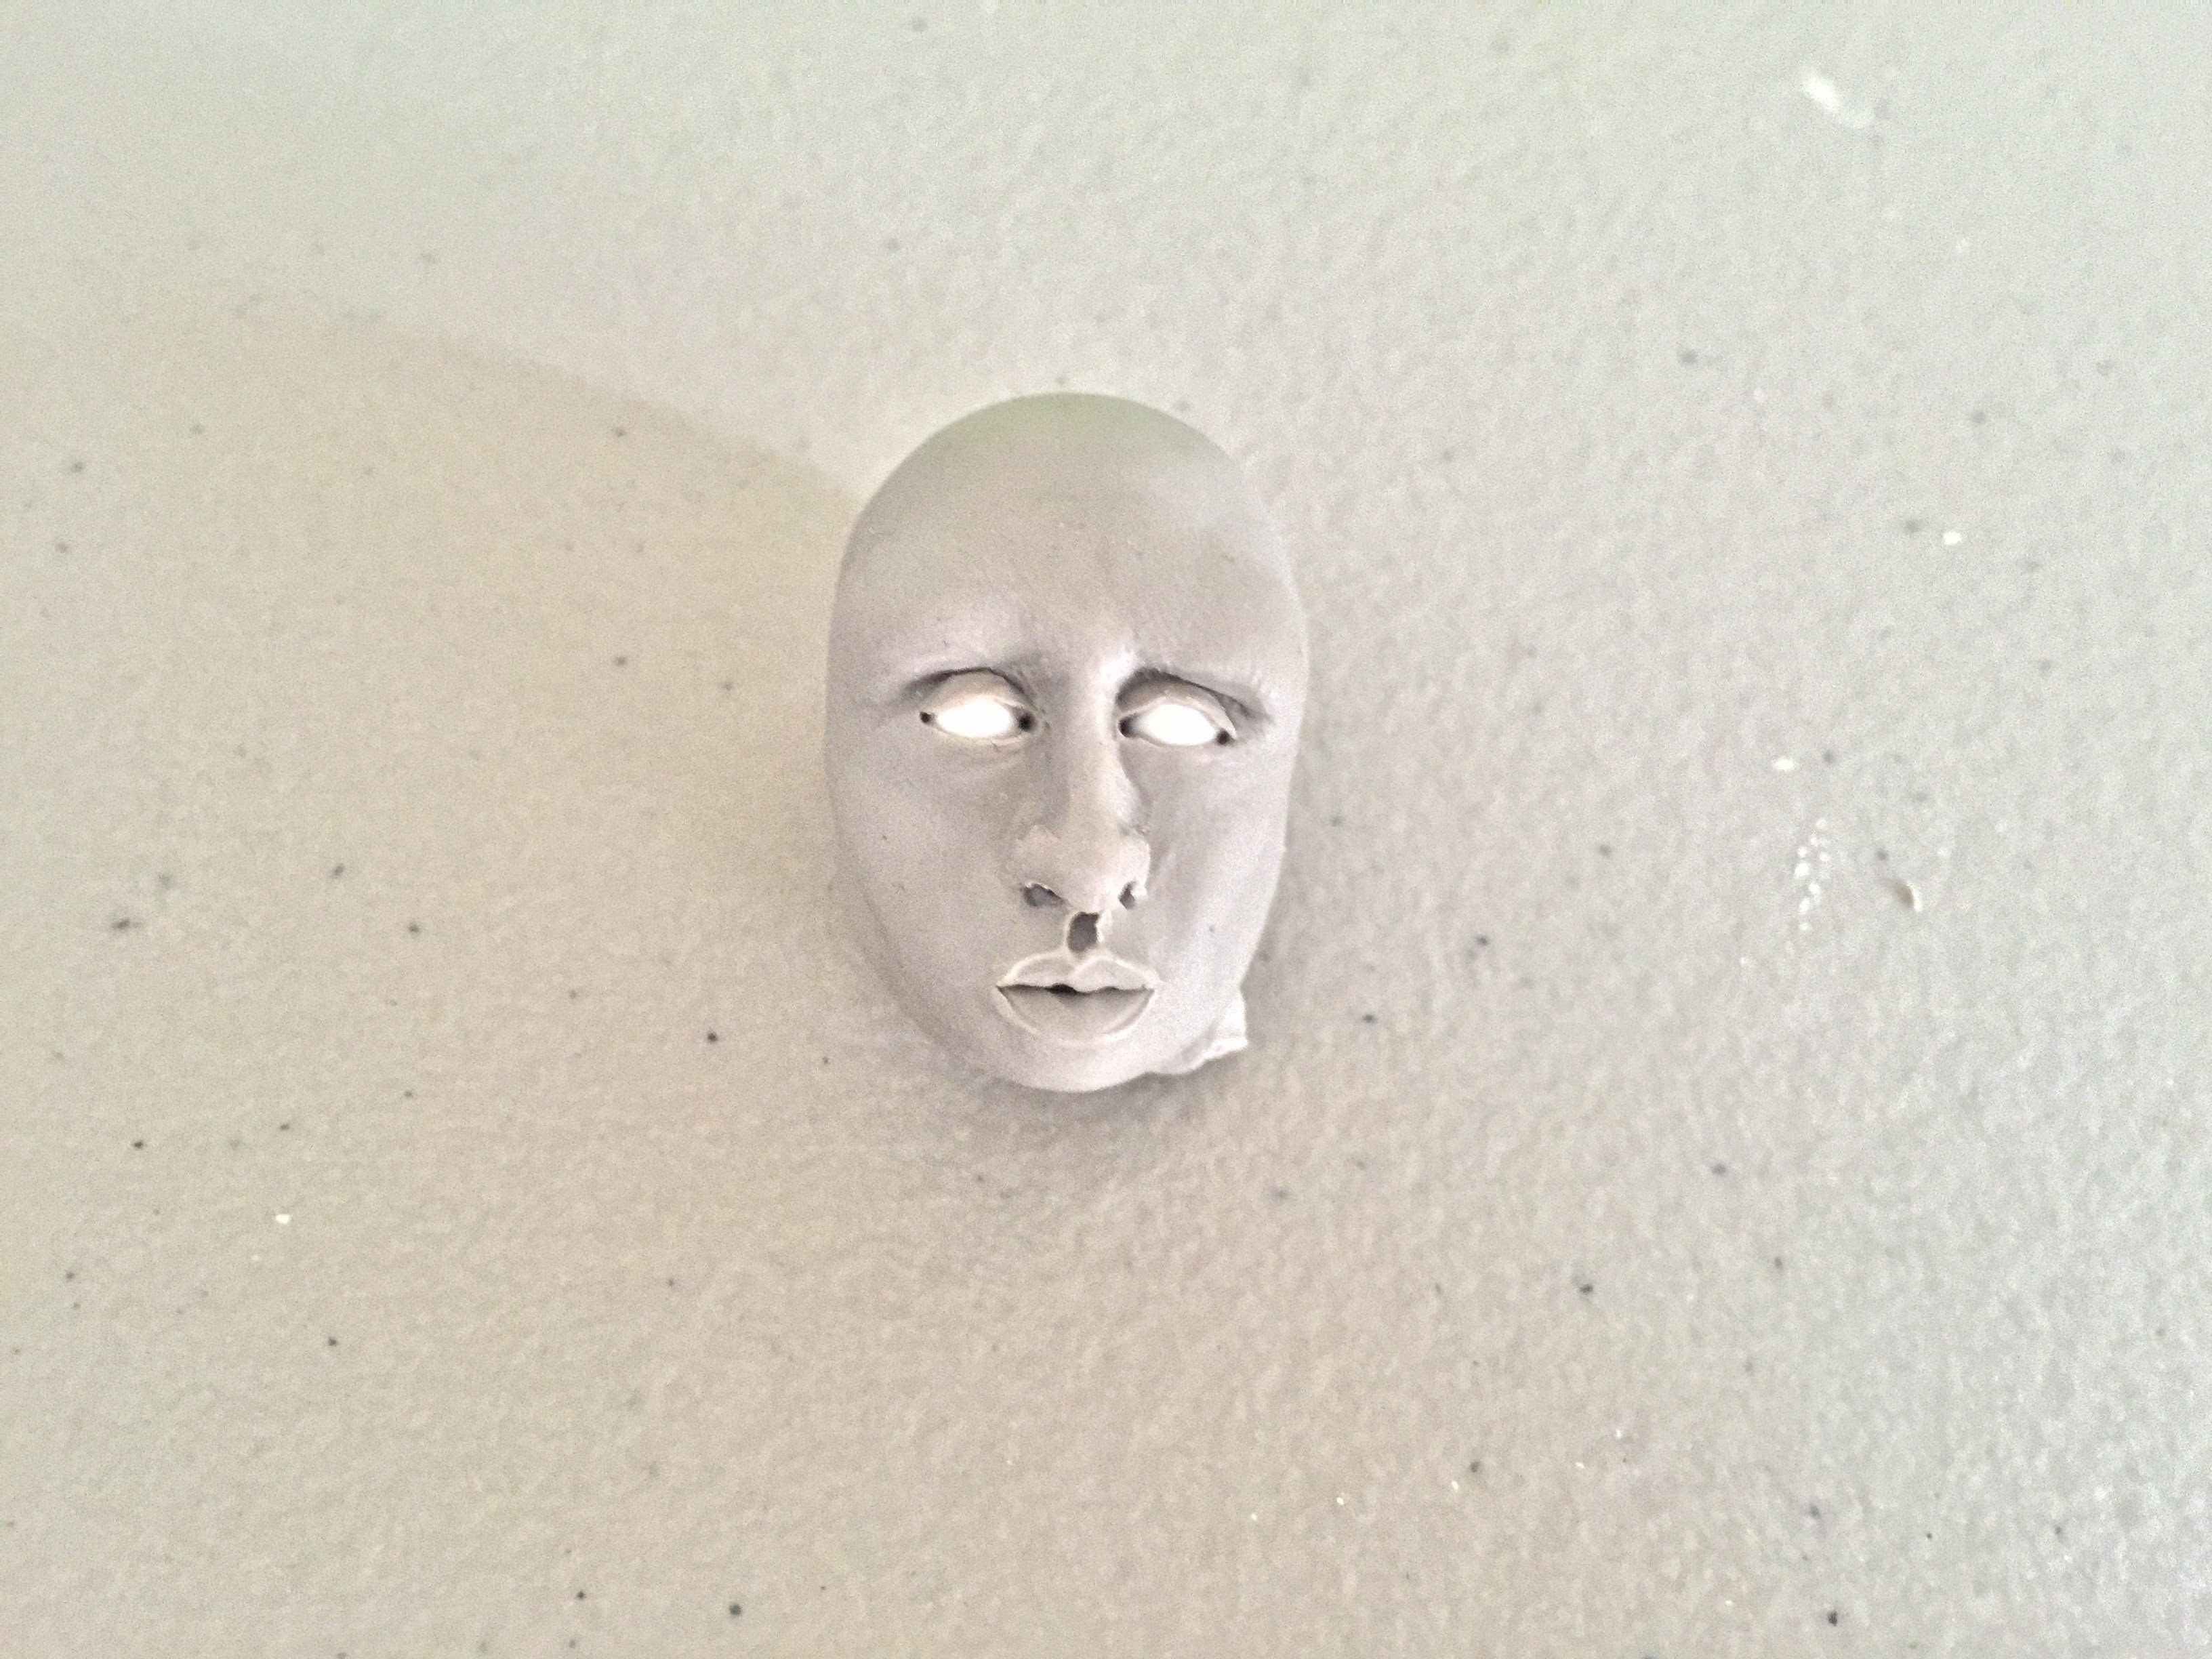 Practice Corner: Sculpting Clay Faces